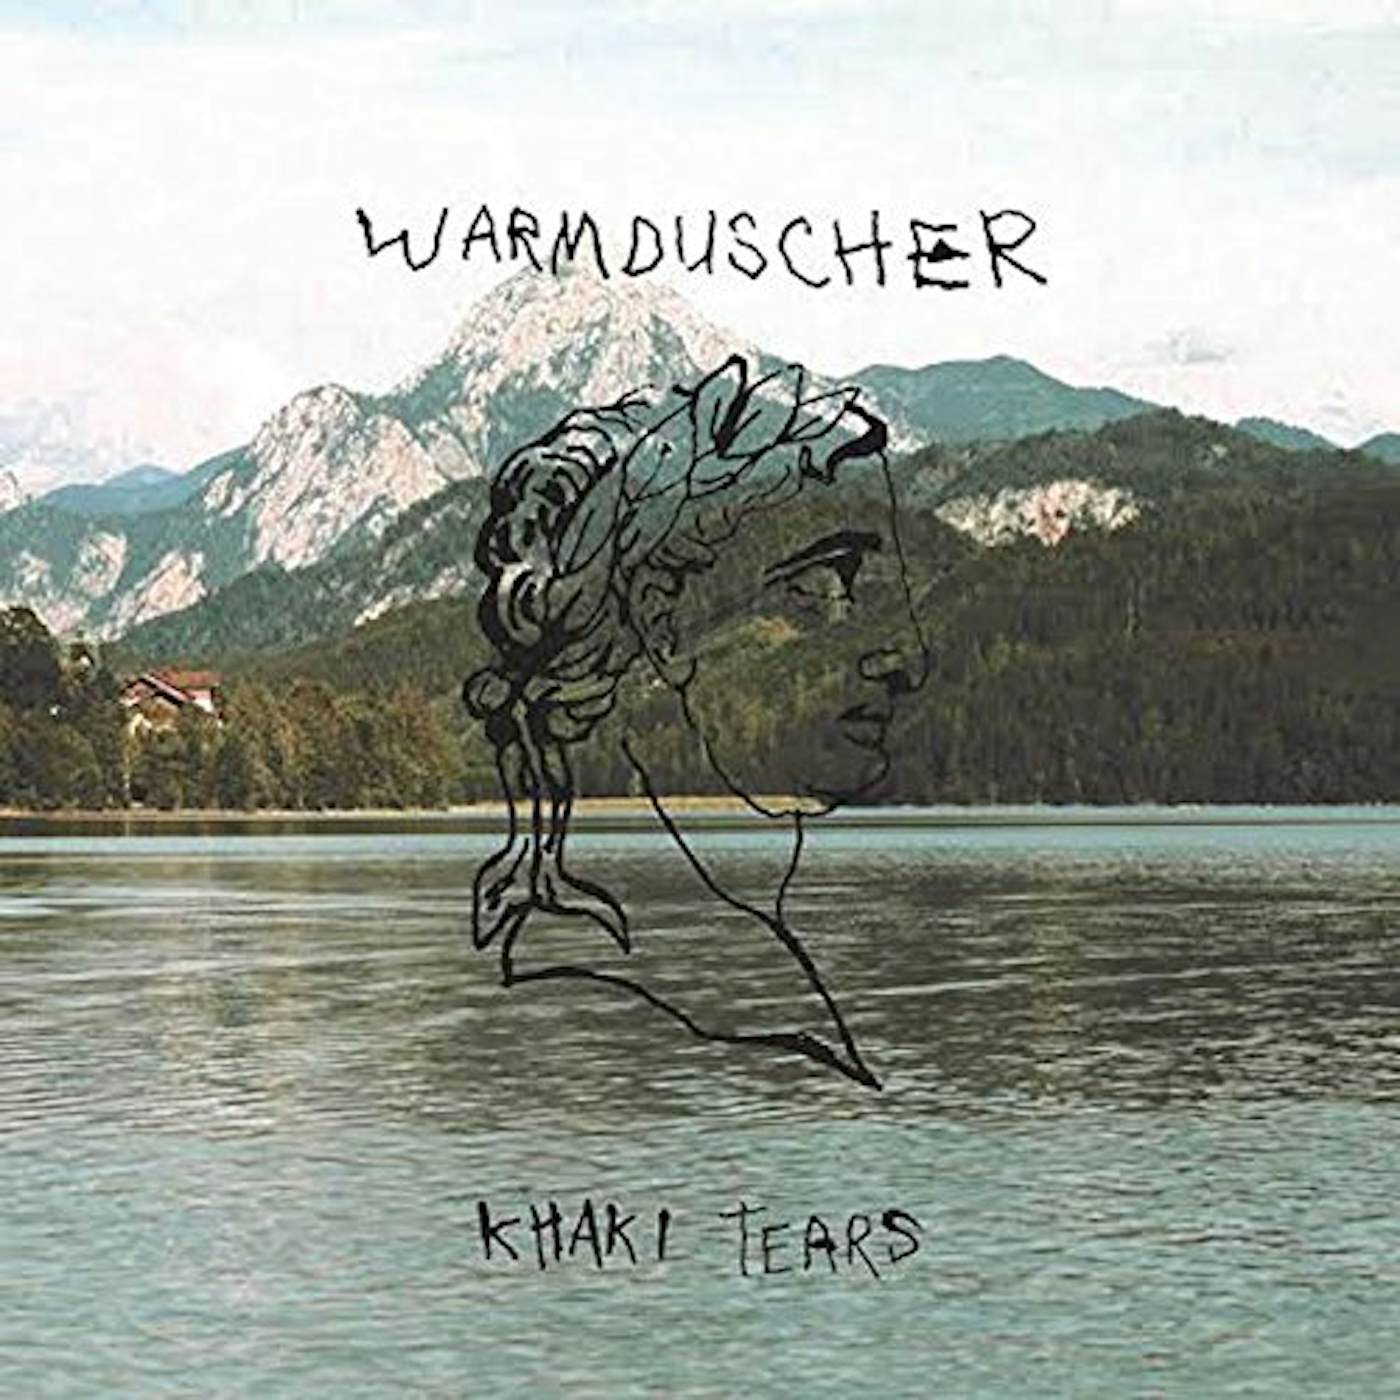 Warmduscher Khaki Tears Vinyl Record